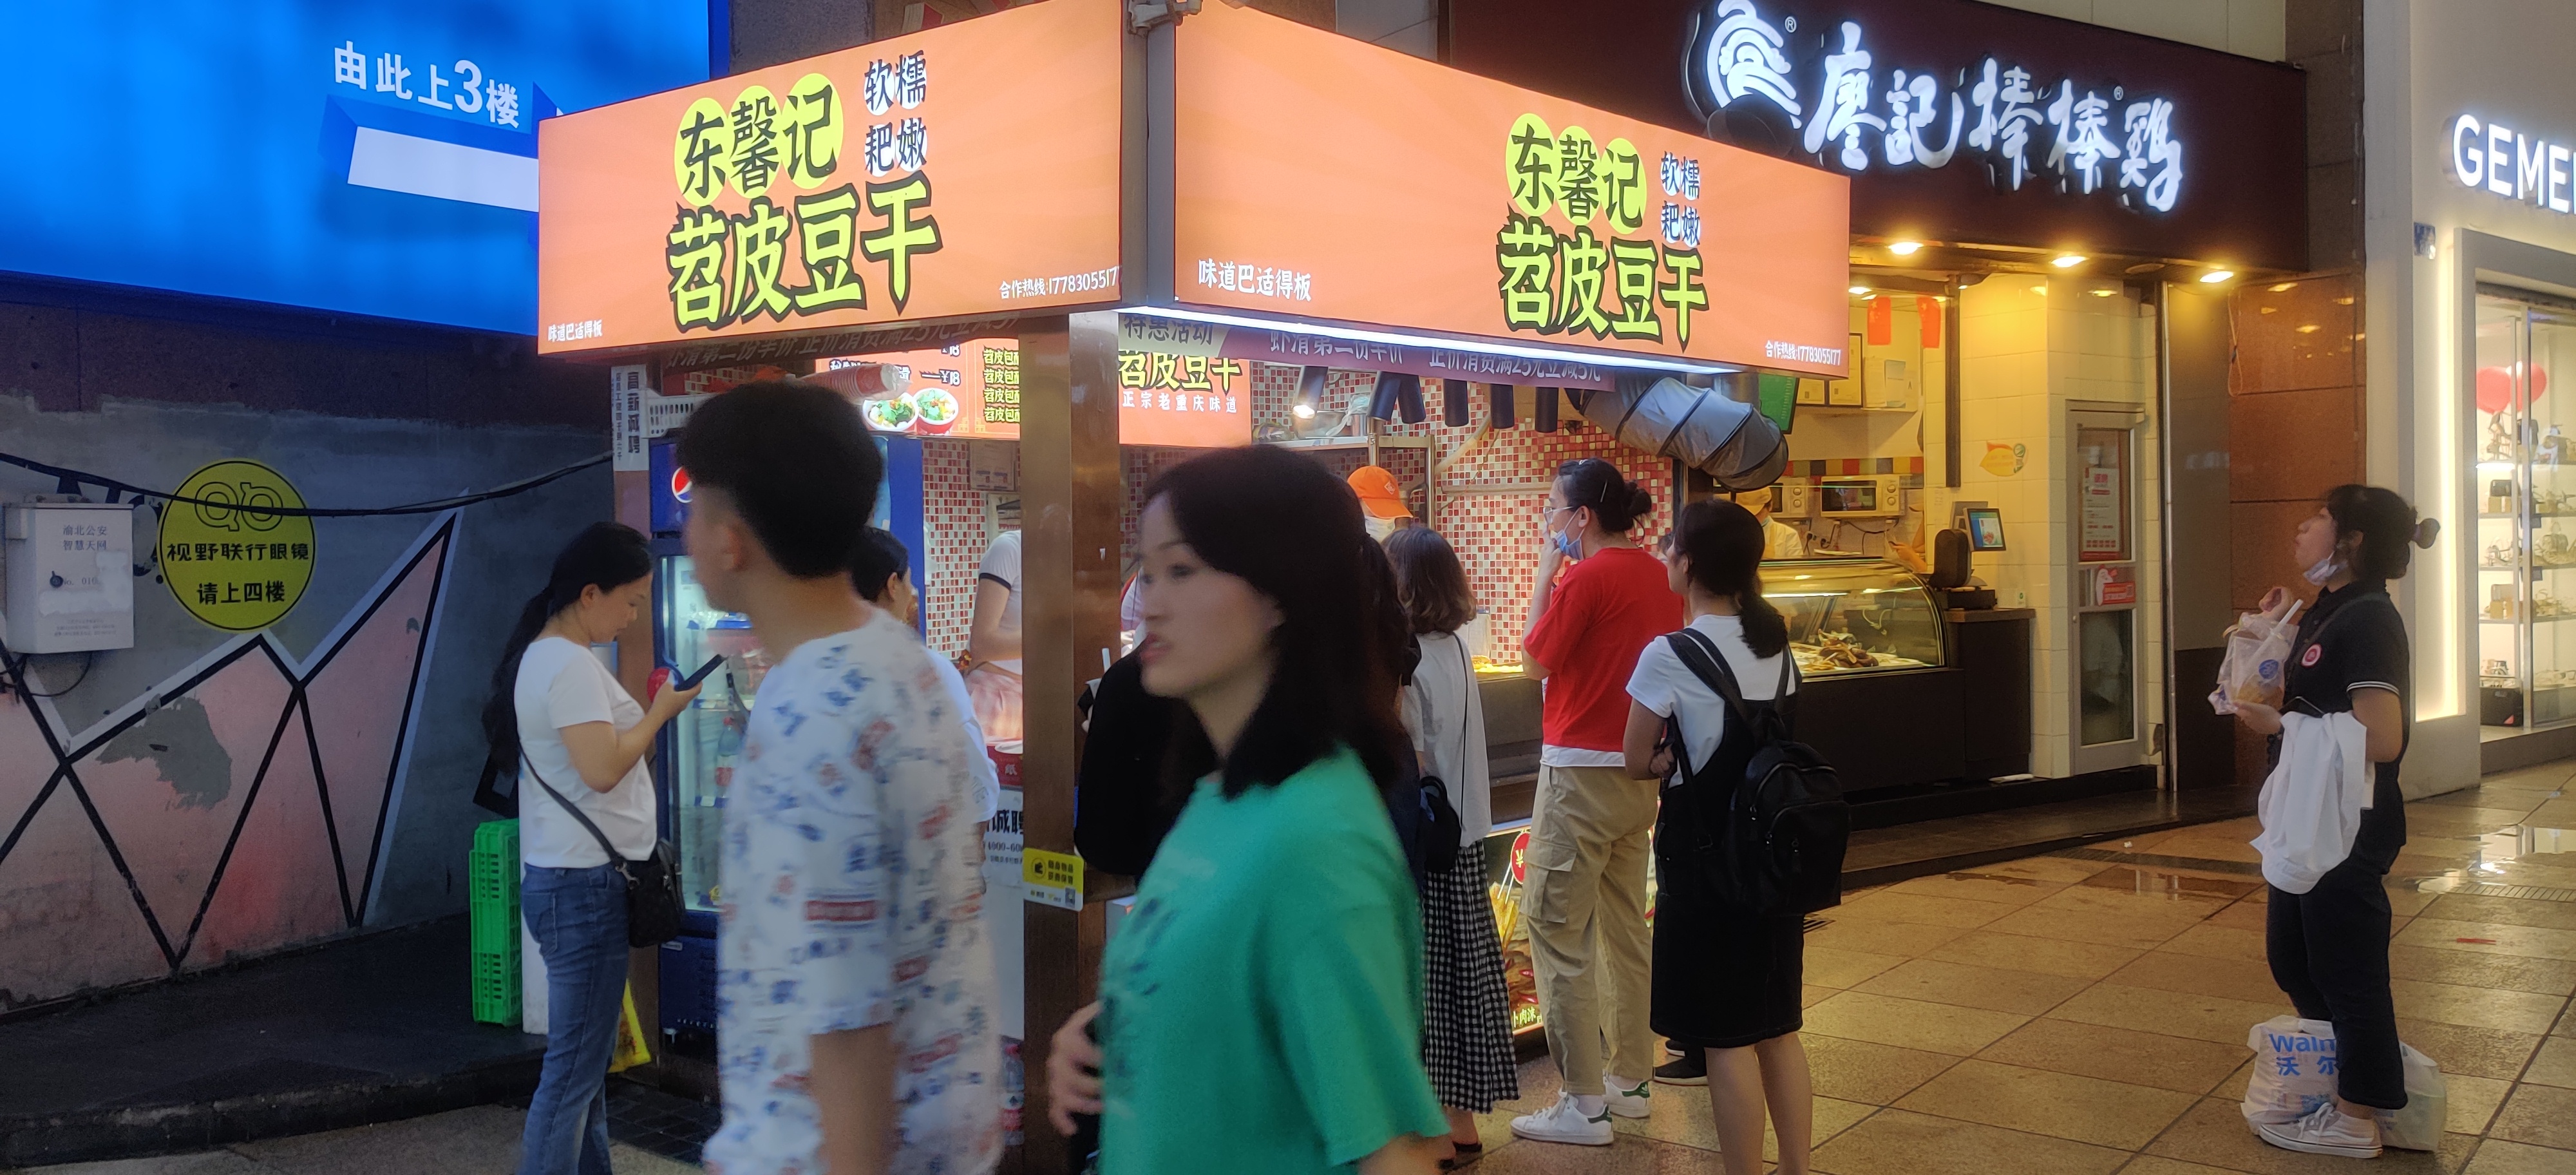 九龙坡区明佟餐饮店 环境照片活动图片